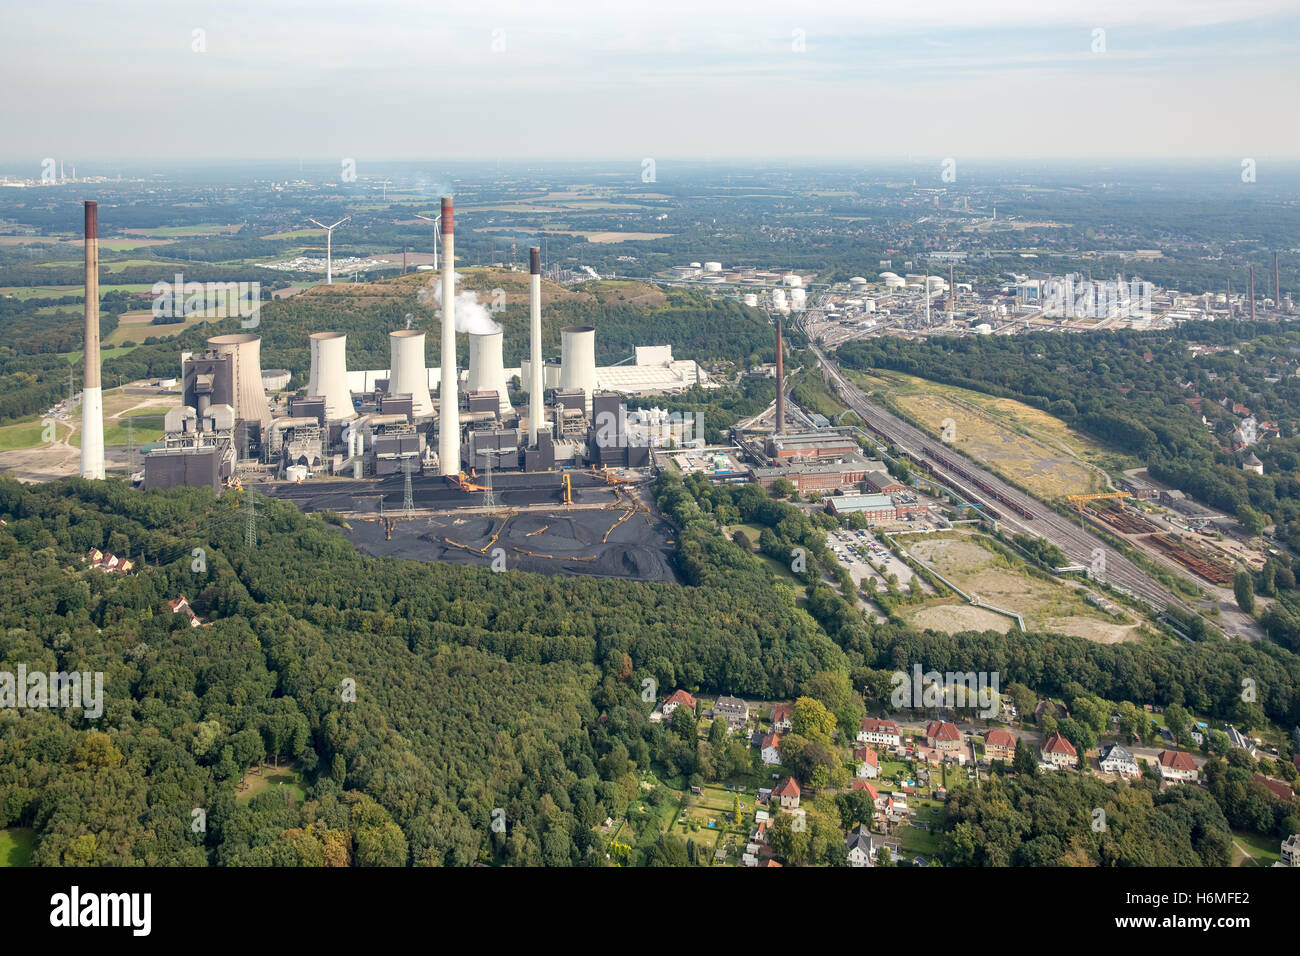 Luftbild, Uniper Powerplant Ltd, Kraftwerk Scholven in Gelsenkirchen, Kohle befeuerten Kraftwerk, Gladbeck, Ruhr Bereich, Stockfoto